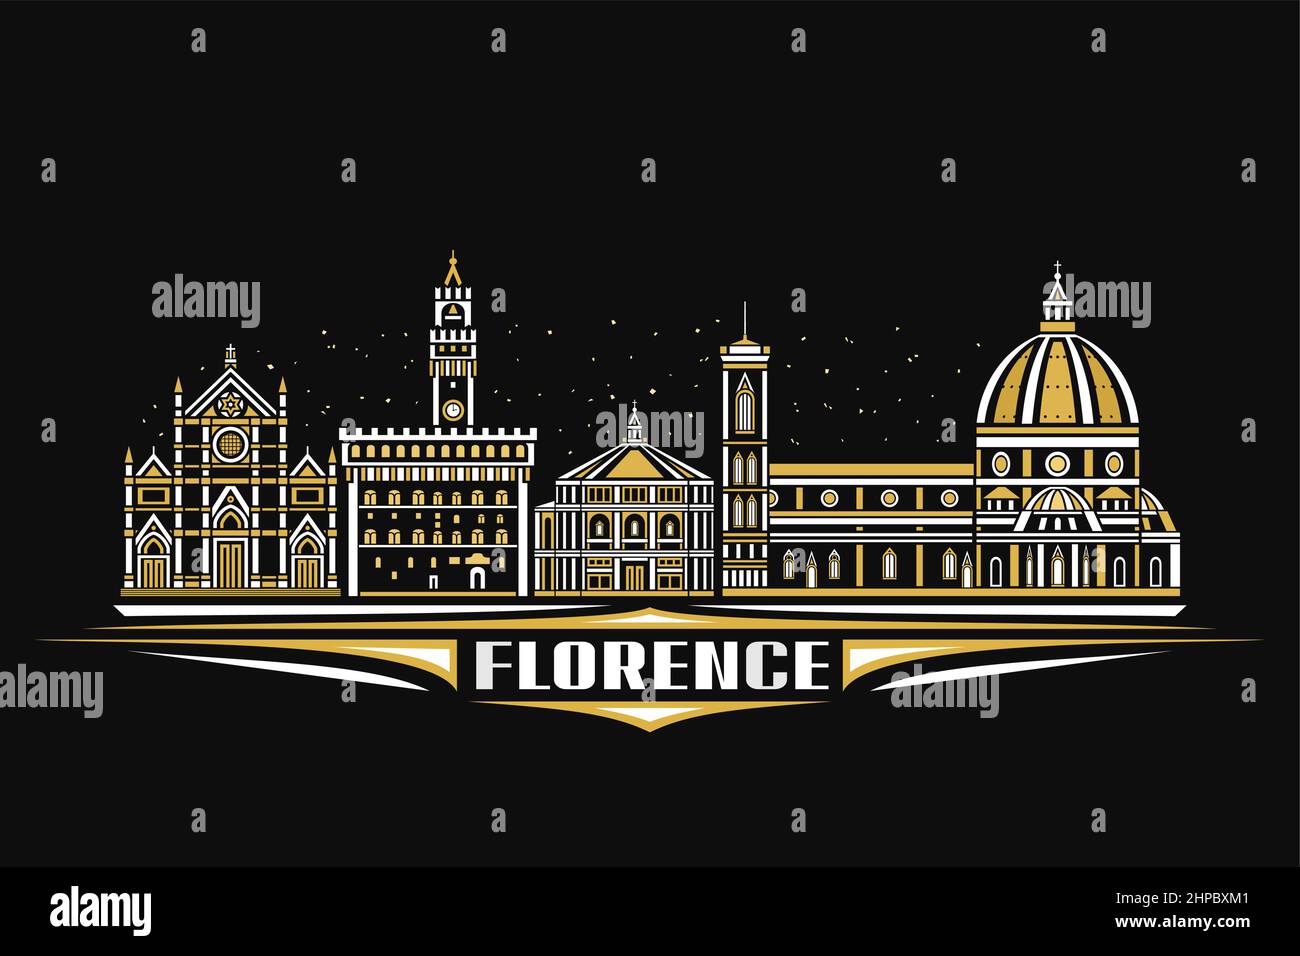 Illustrazione vettoriale di Firenze, poster orizzontale scuro con disegno lineare famoso paesaggio cittadino di firenze su sfondo cielo crepuscolo, arte urbana europea Illustrazione Vettoriale